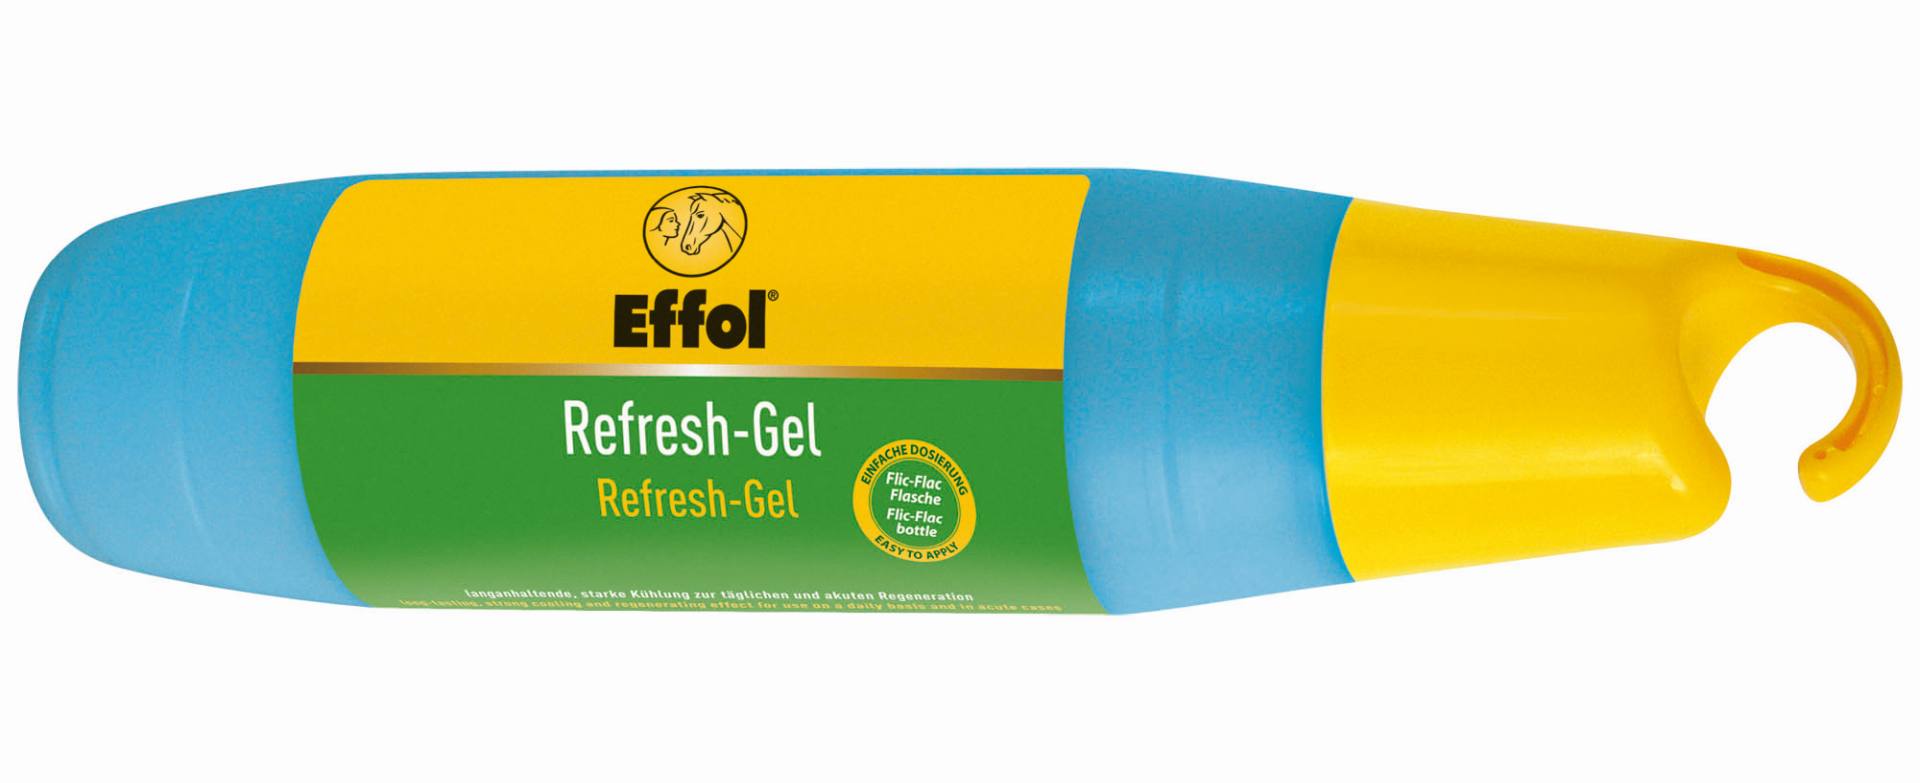 Effol-Refresh-Gel  500 ml